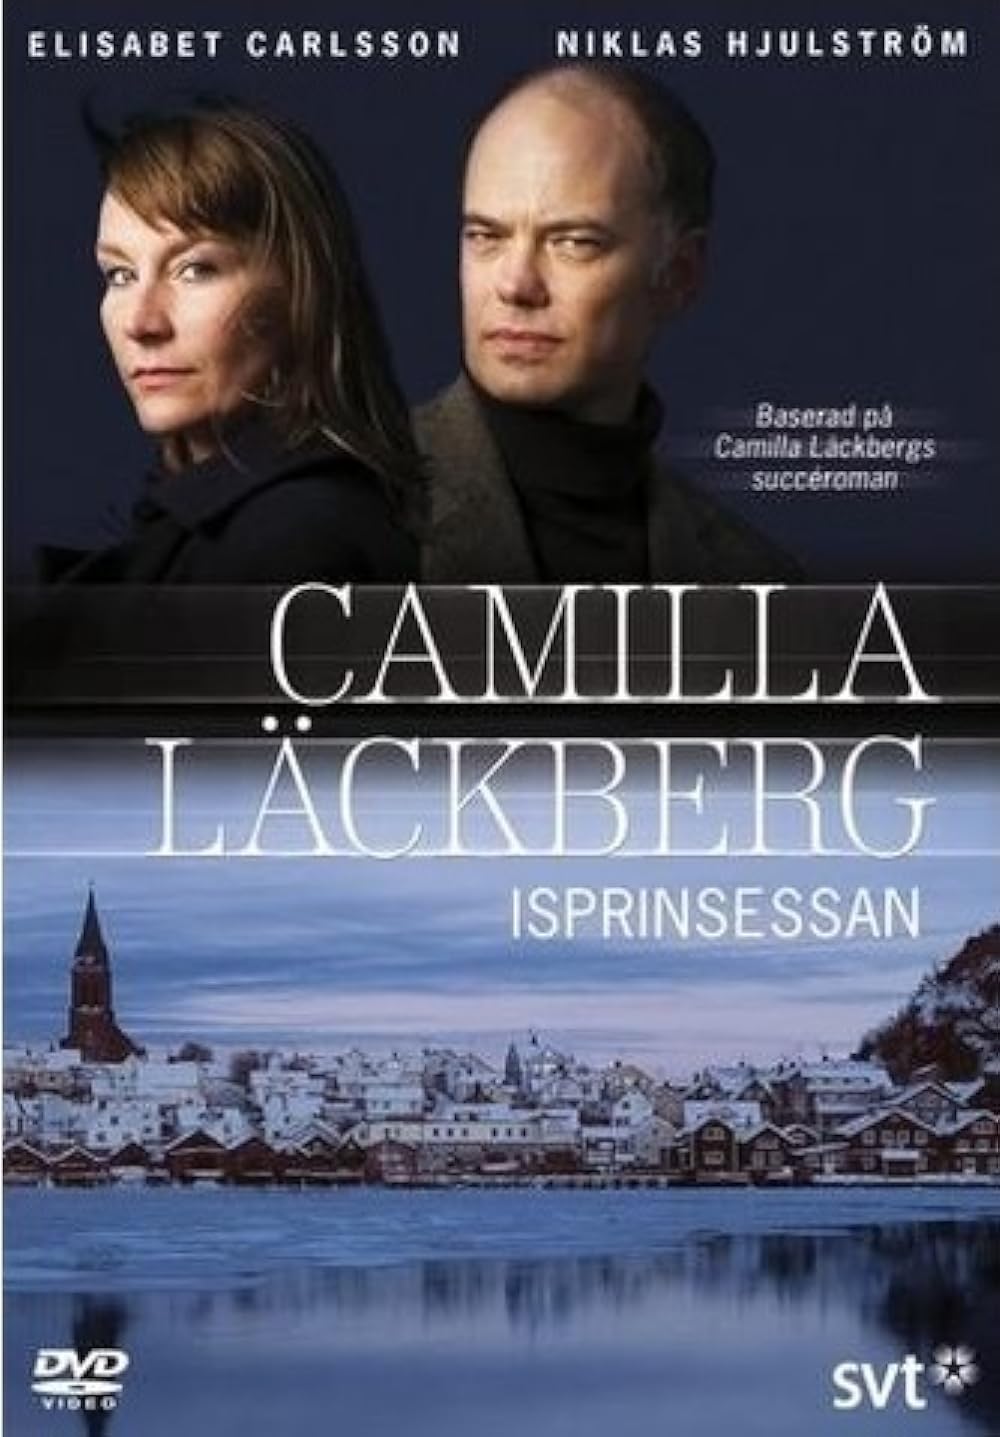 Camilla Lackberg Dvd 2 van 4 Isprinssan 2007